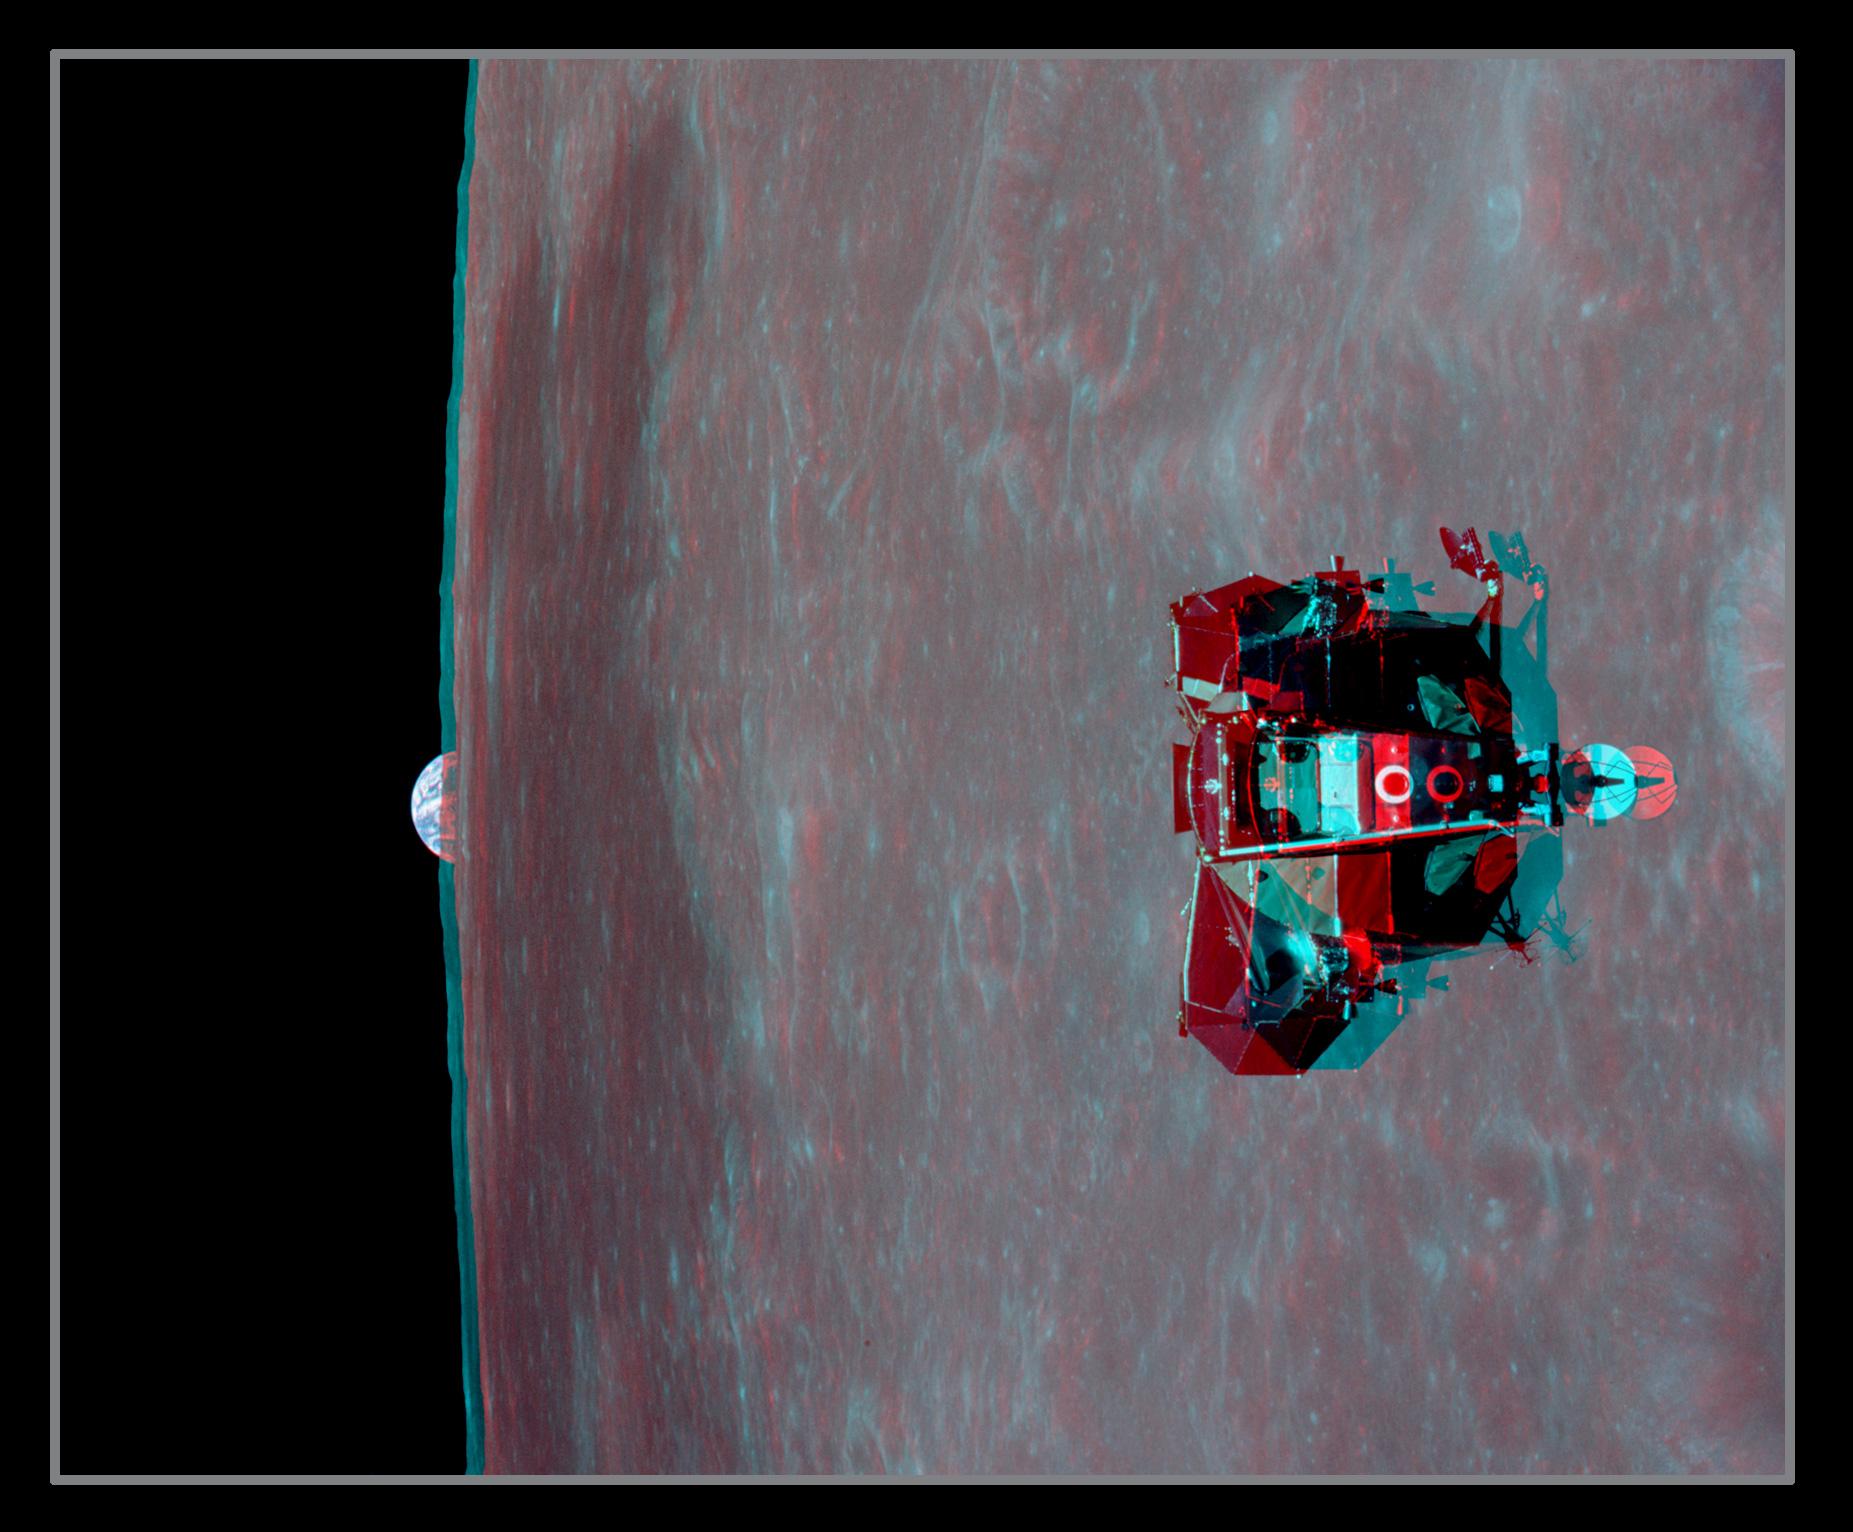 صورة مجسّمة بالأزرق والأحمر تُظهر المركبة وتحتها القمر وتبزغ الأرض من خلف أفقه